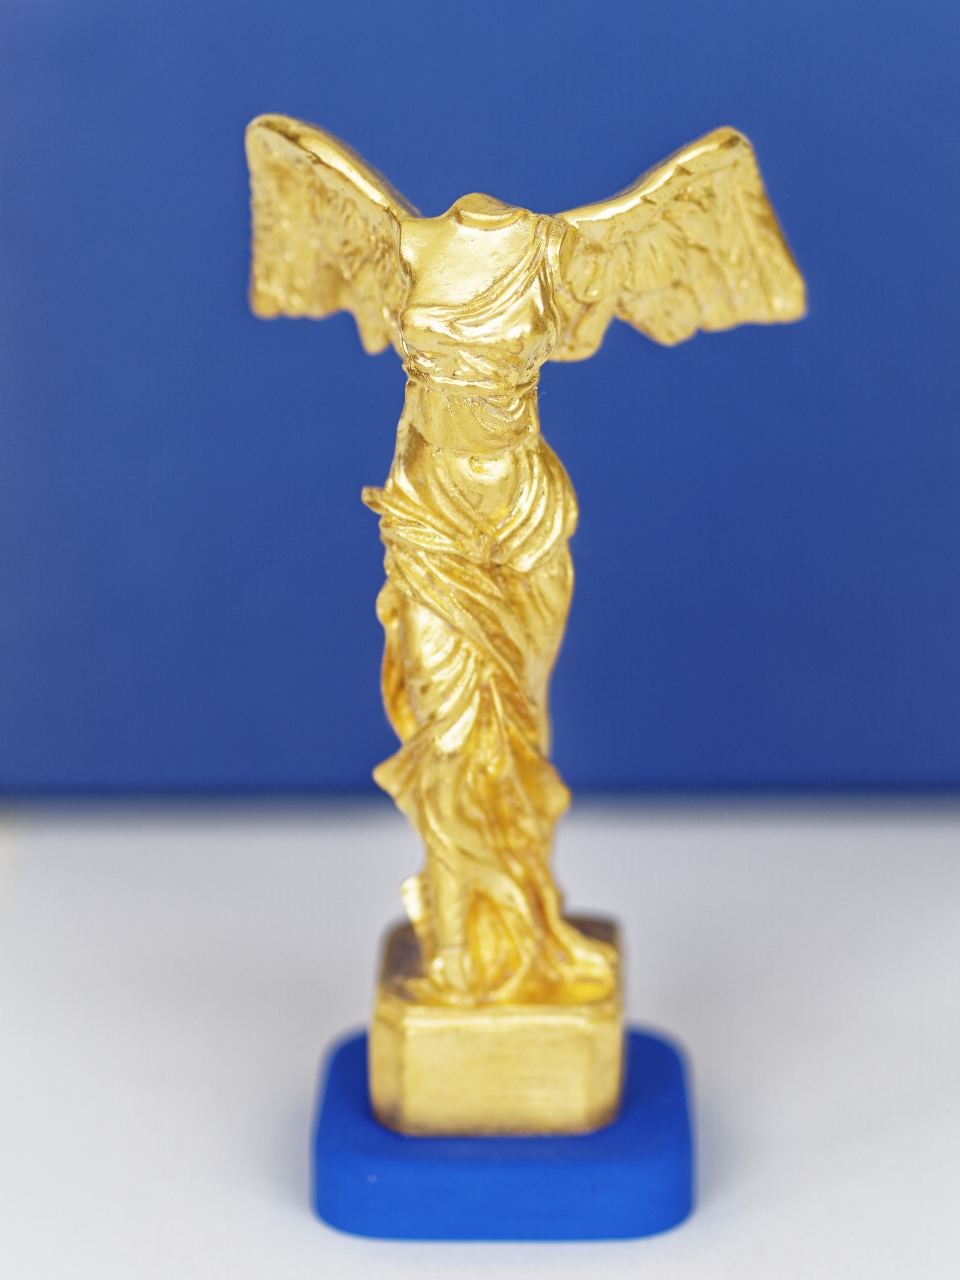 Victoire dorée, Golden victory , 15 cm(EUR 700)